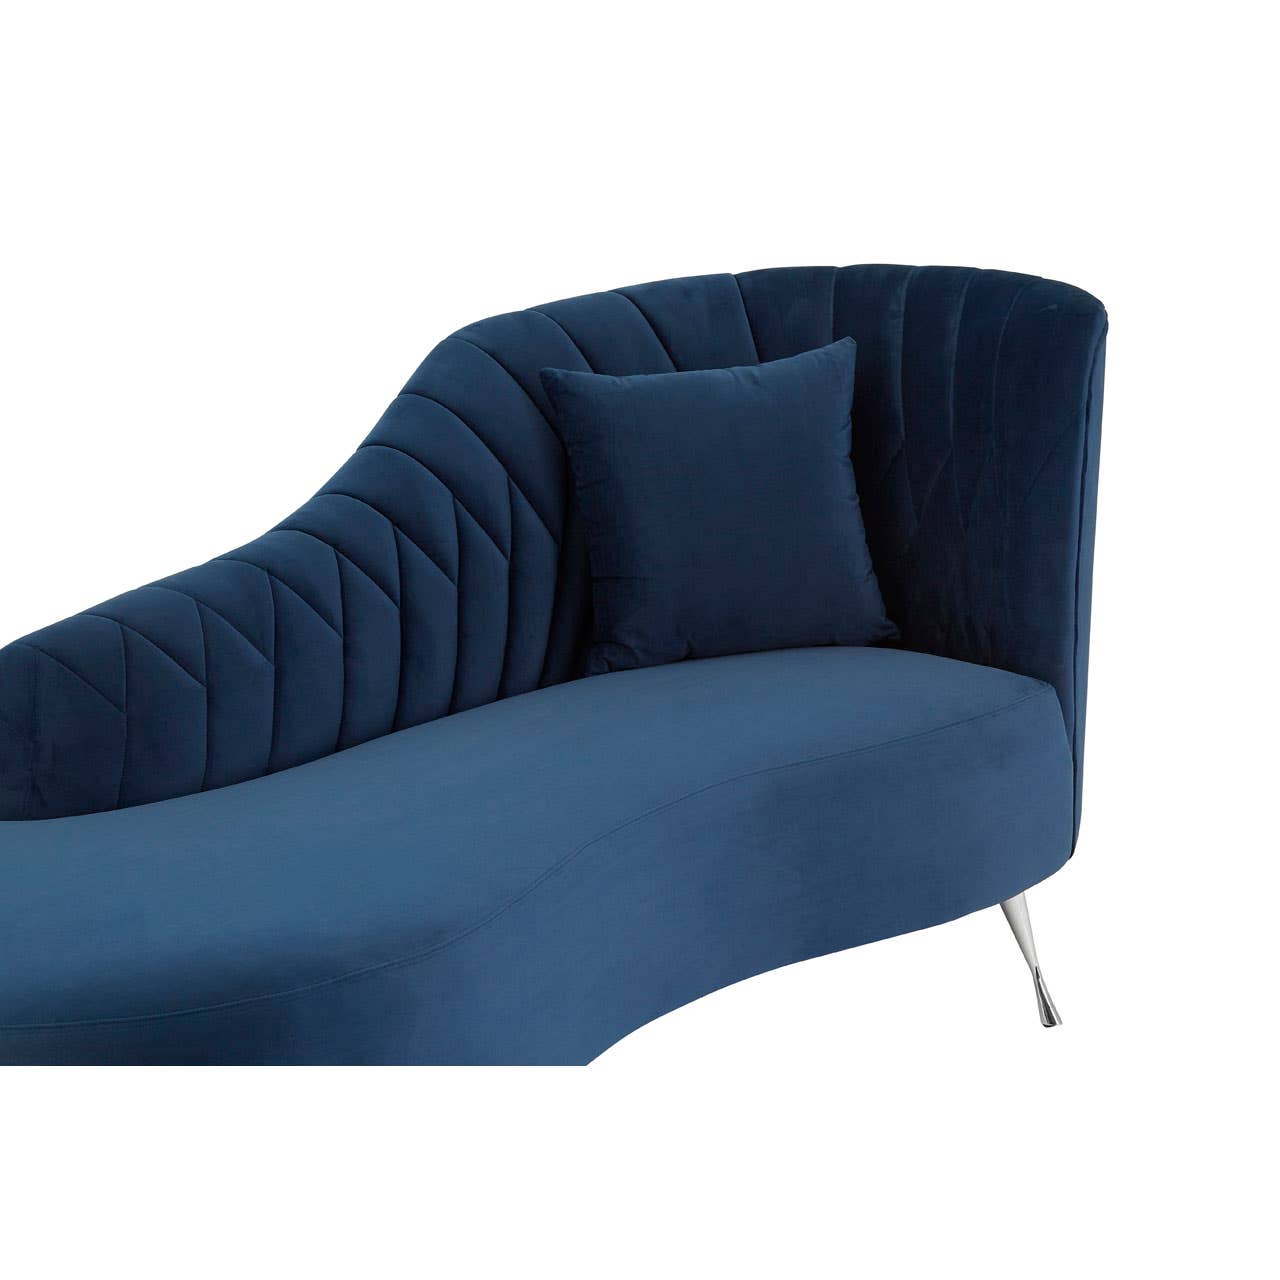 Noosa & Co. Living Rene Dark Blue Velvet Right Arm Chaise Longue House of Isabella UK